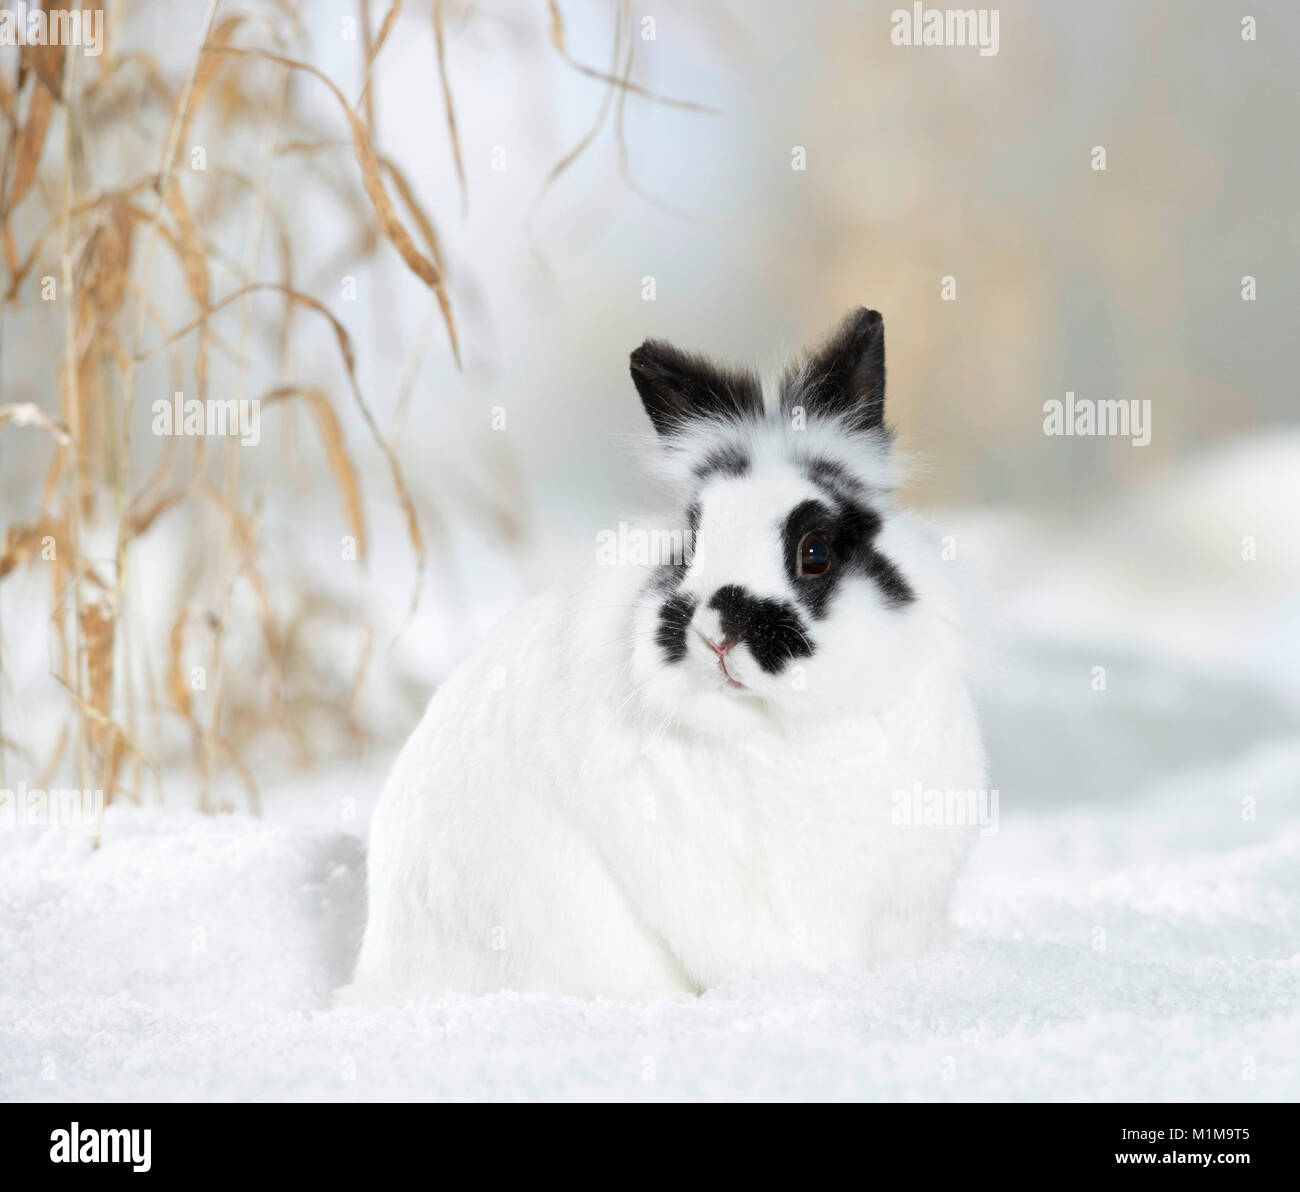 Lapin Nain Néerlandais dans la neige. Allemagne Banque D'Images